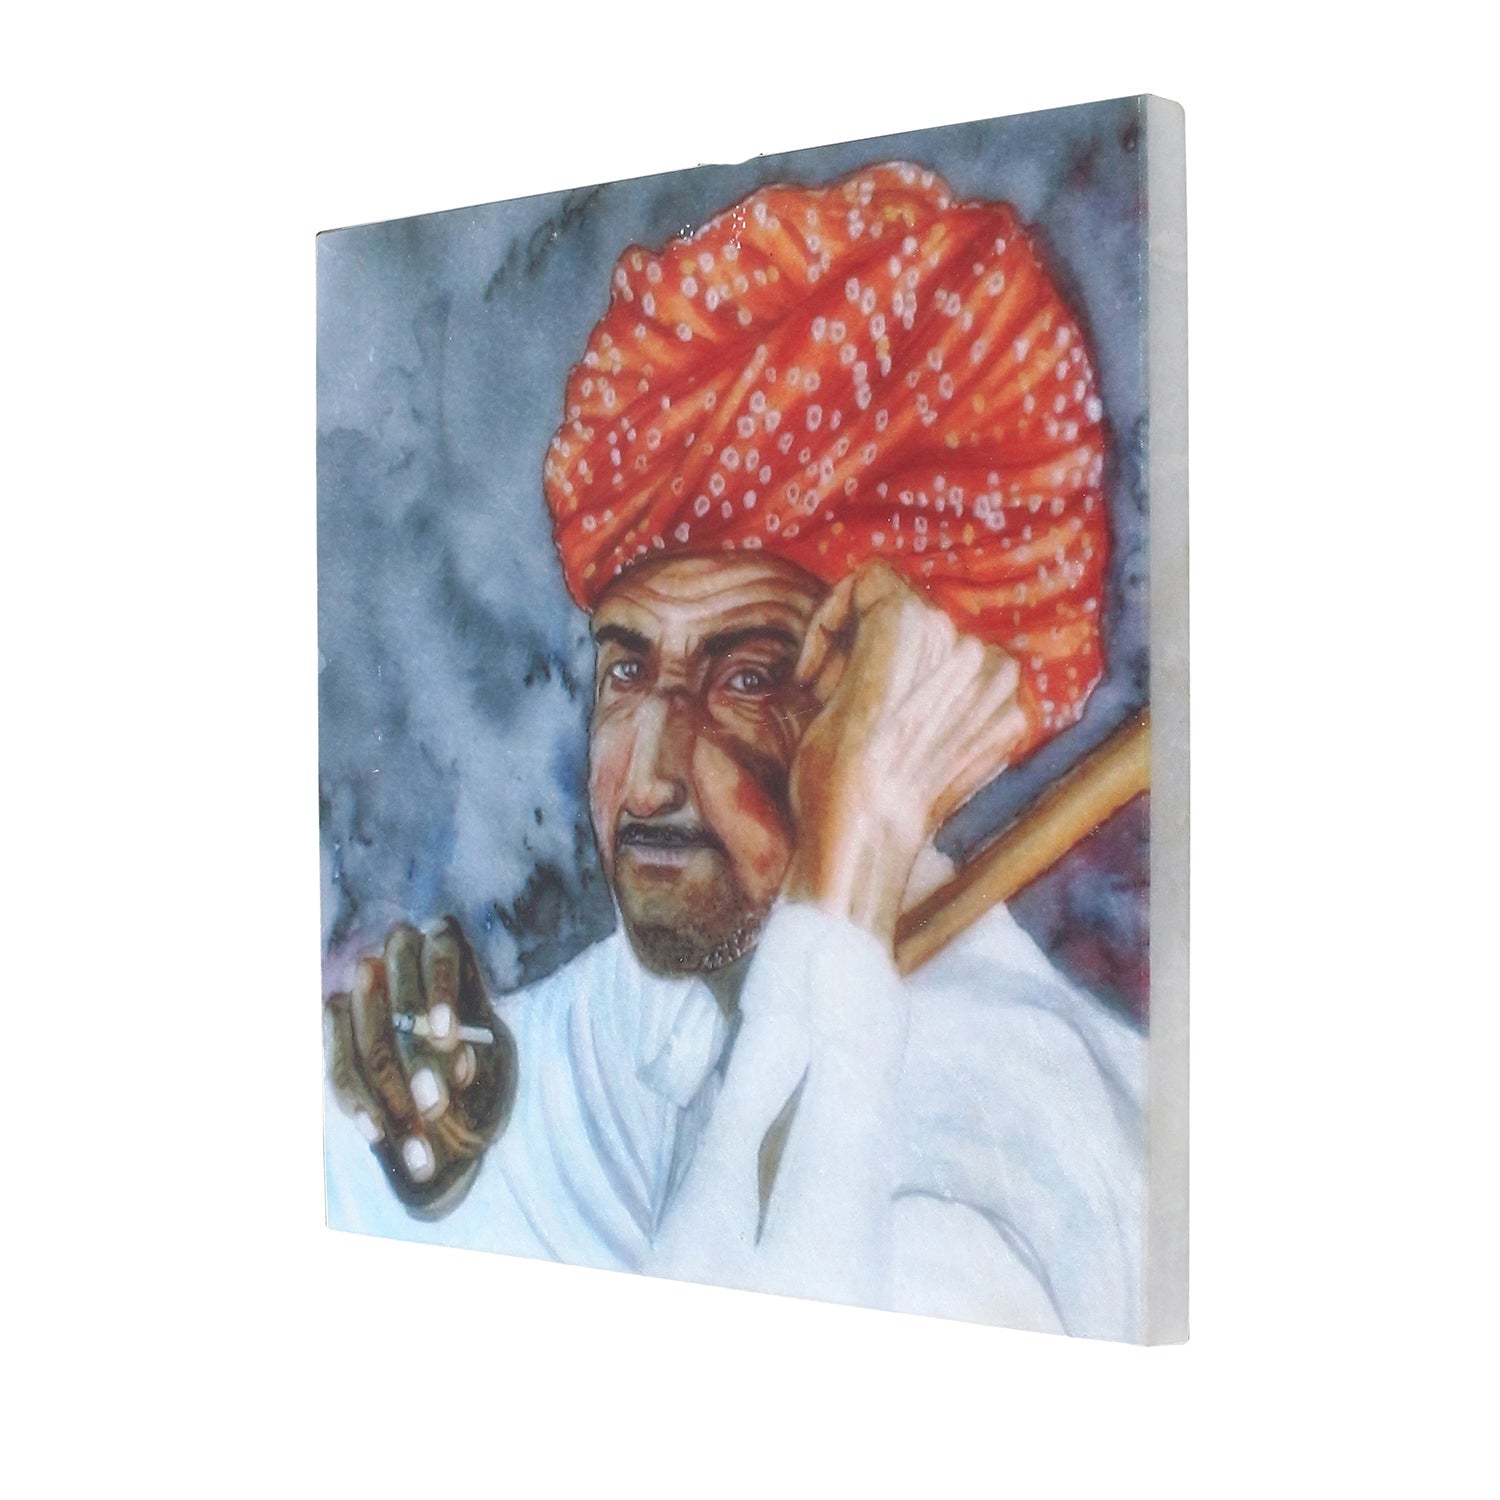 Rajasthani Man Wearing Turban Painting On Marble Square Tile 3